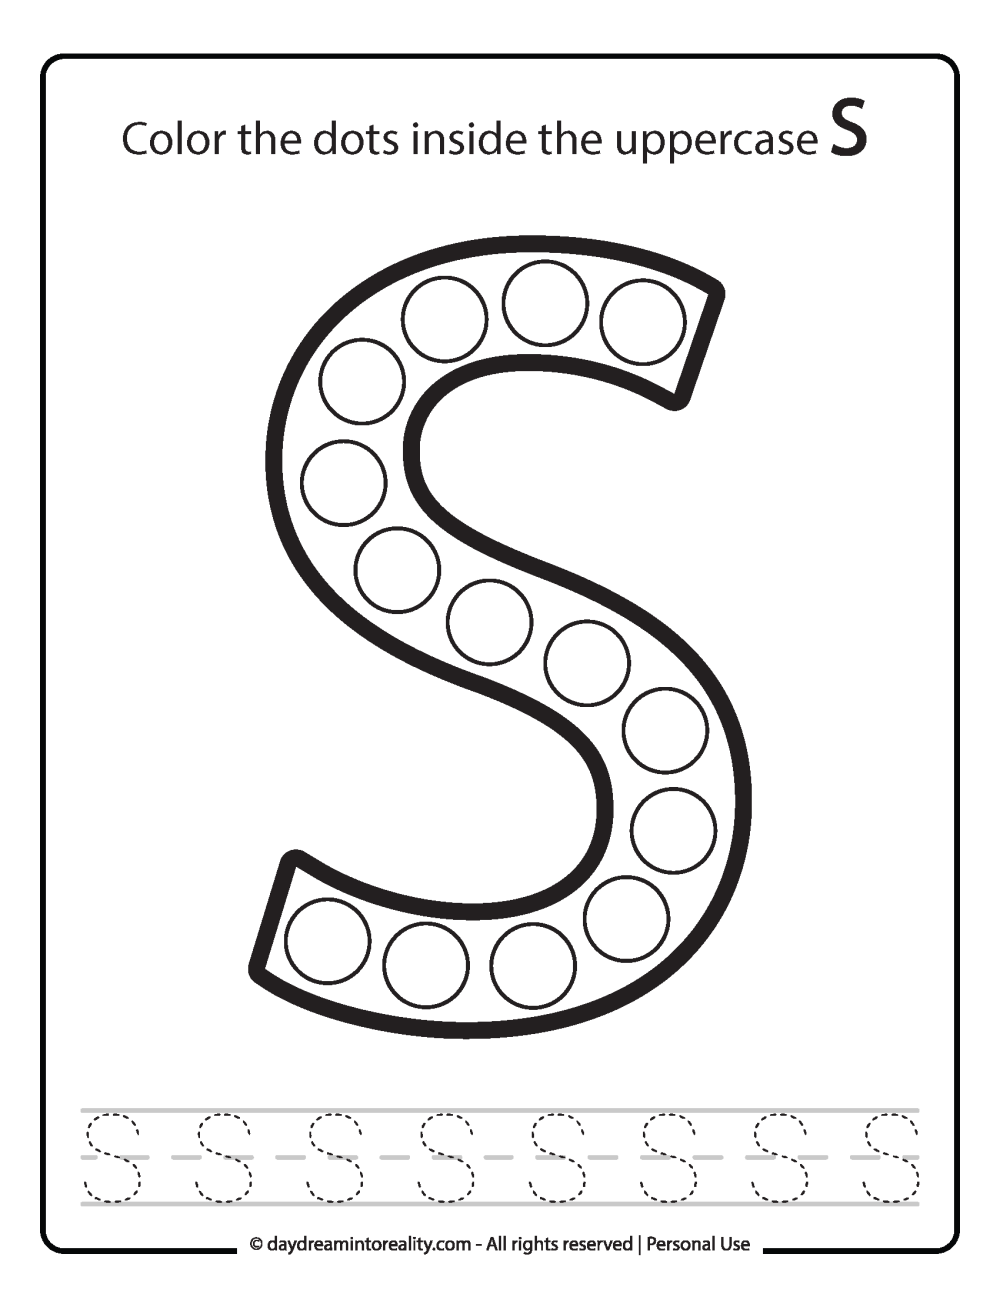 Uppercase "S" Dot Marker Worksheet Free Printable activity for kids (preschool, kindergarten)